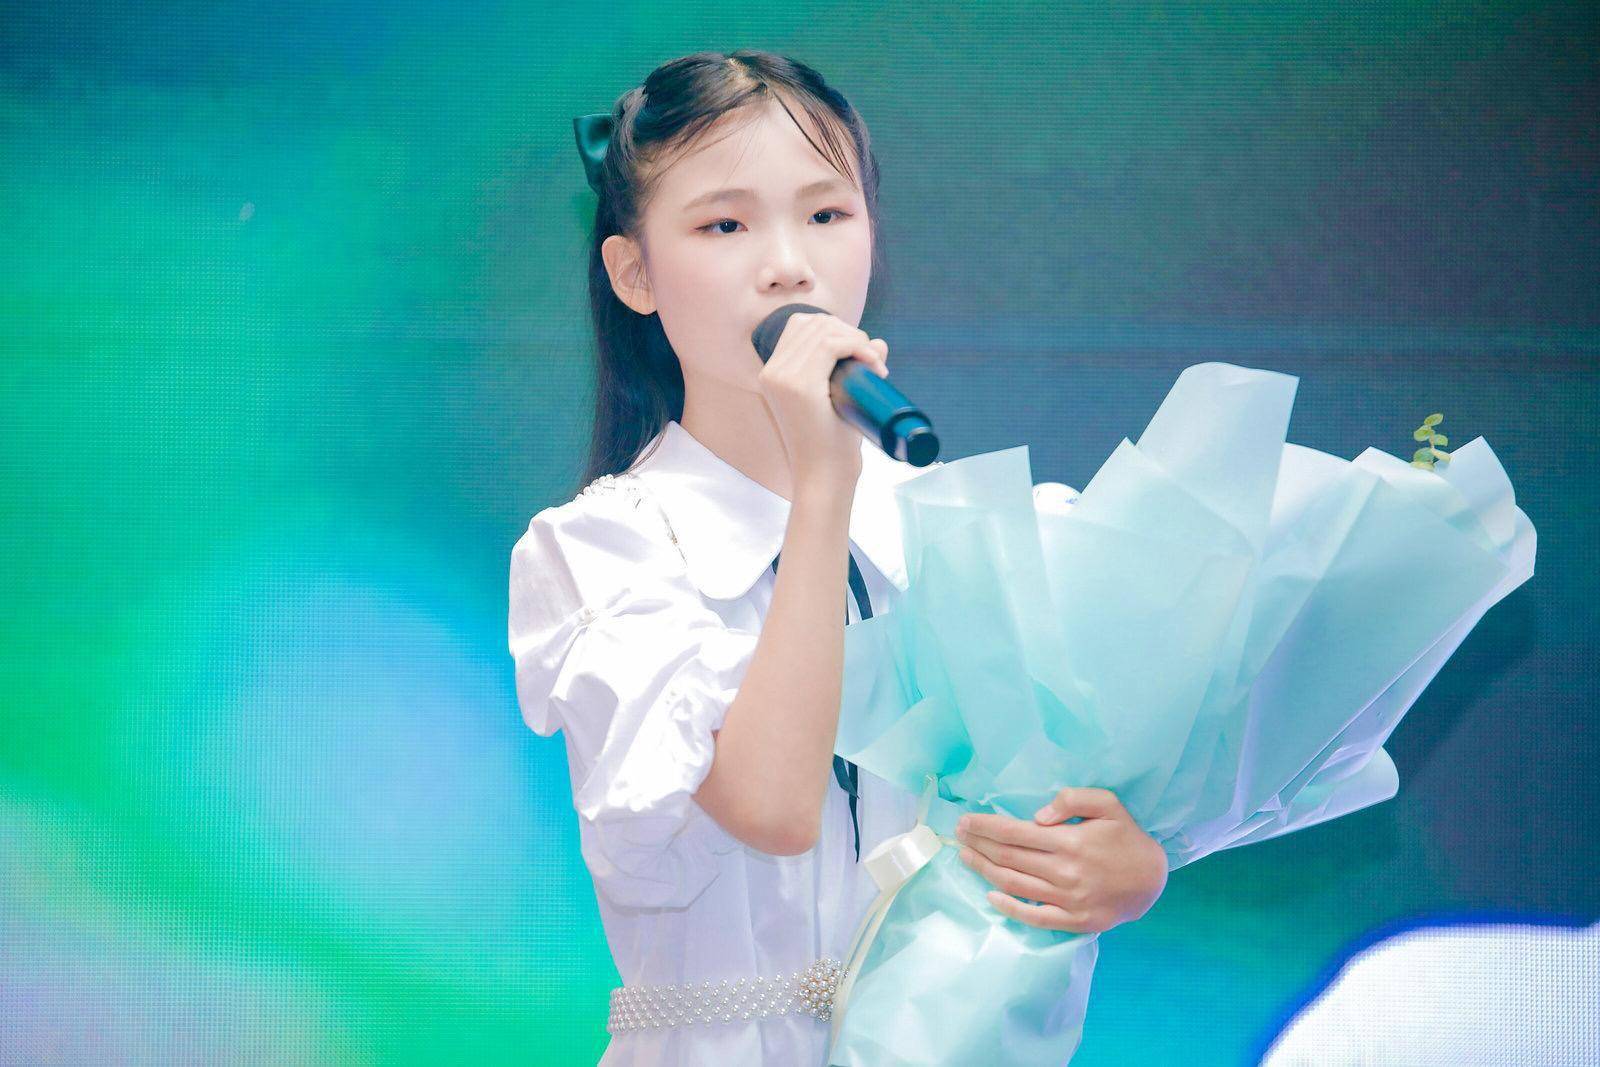 为盲童创作歌曲为白衣战士歌唱12岁广州女孩赵孜菡发布唱片专辑